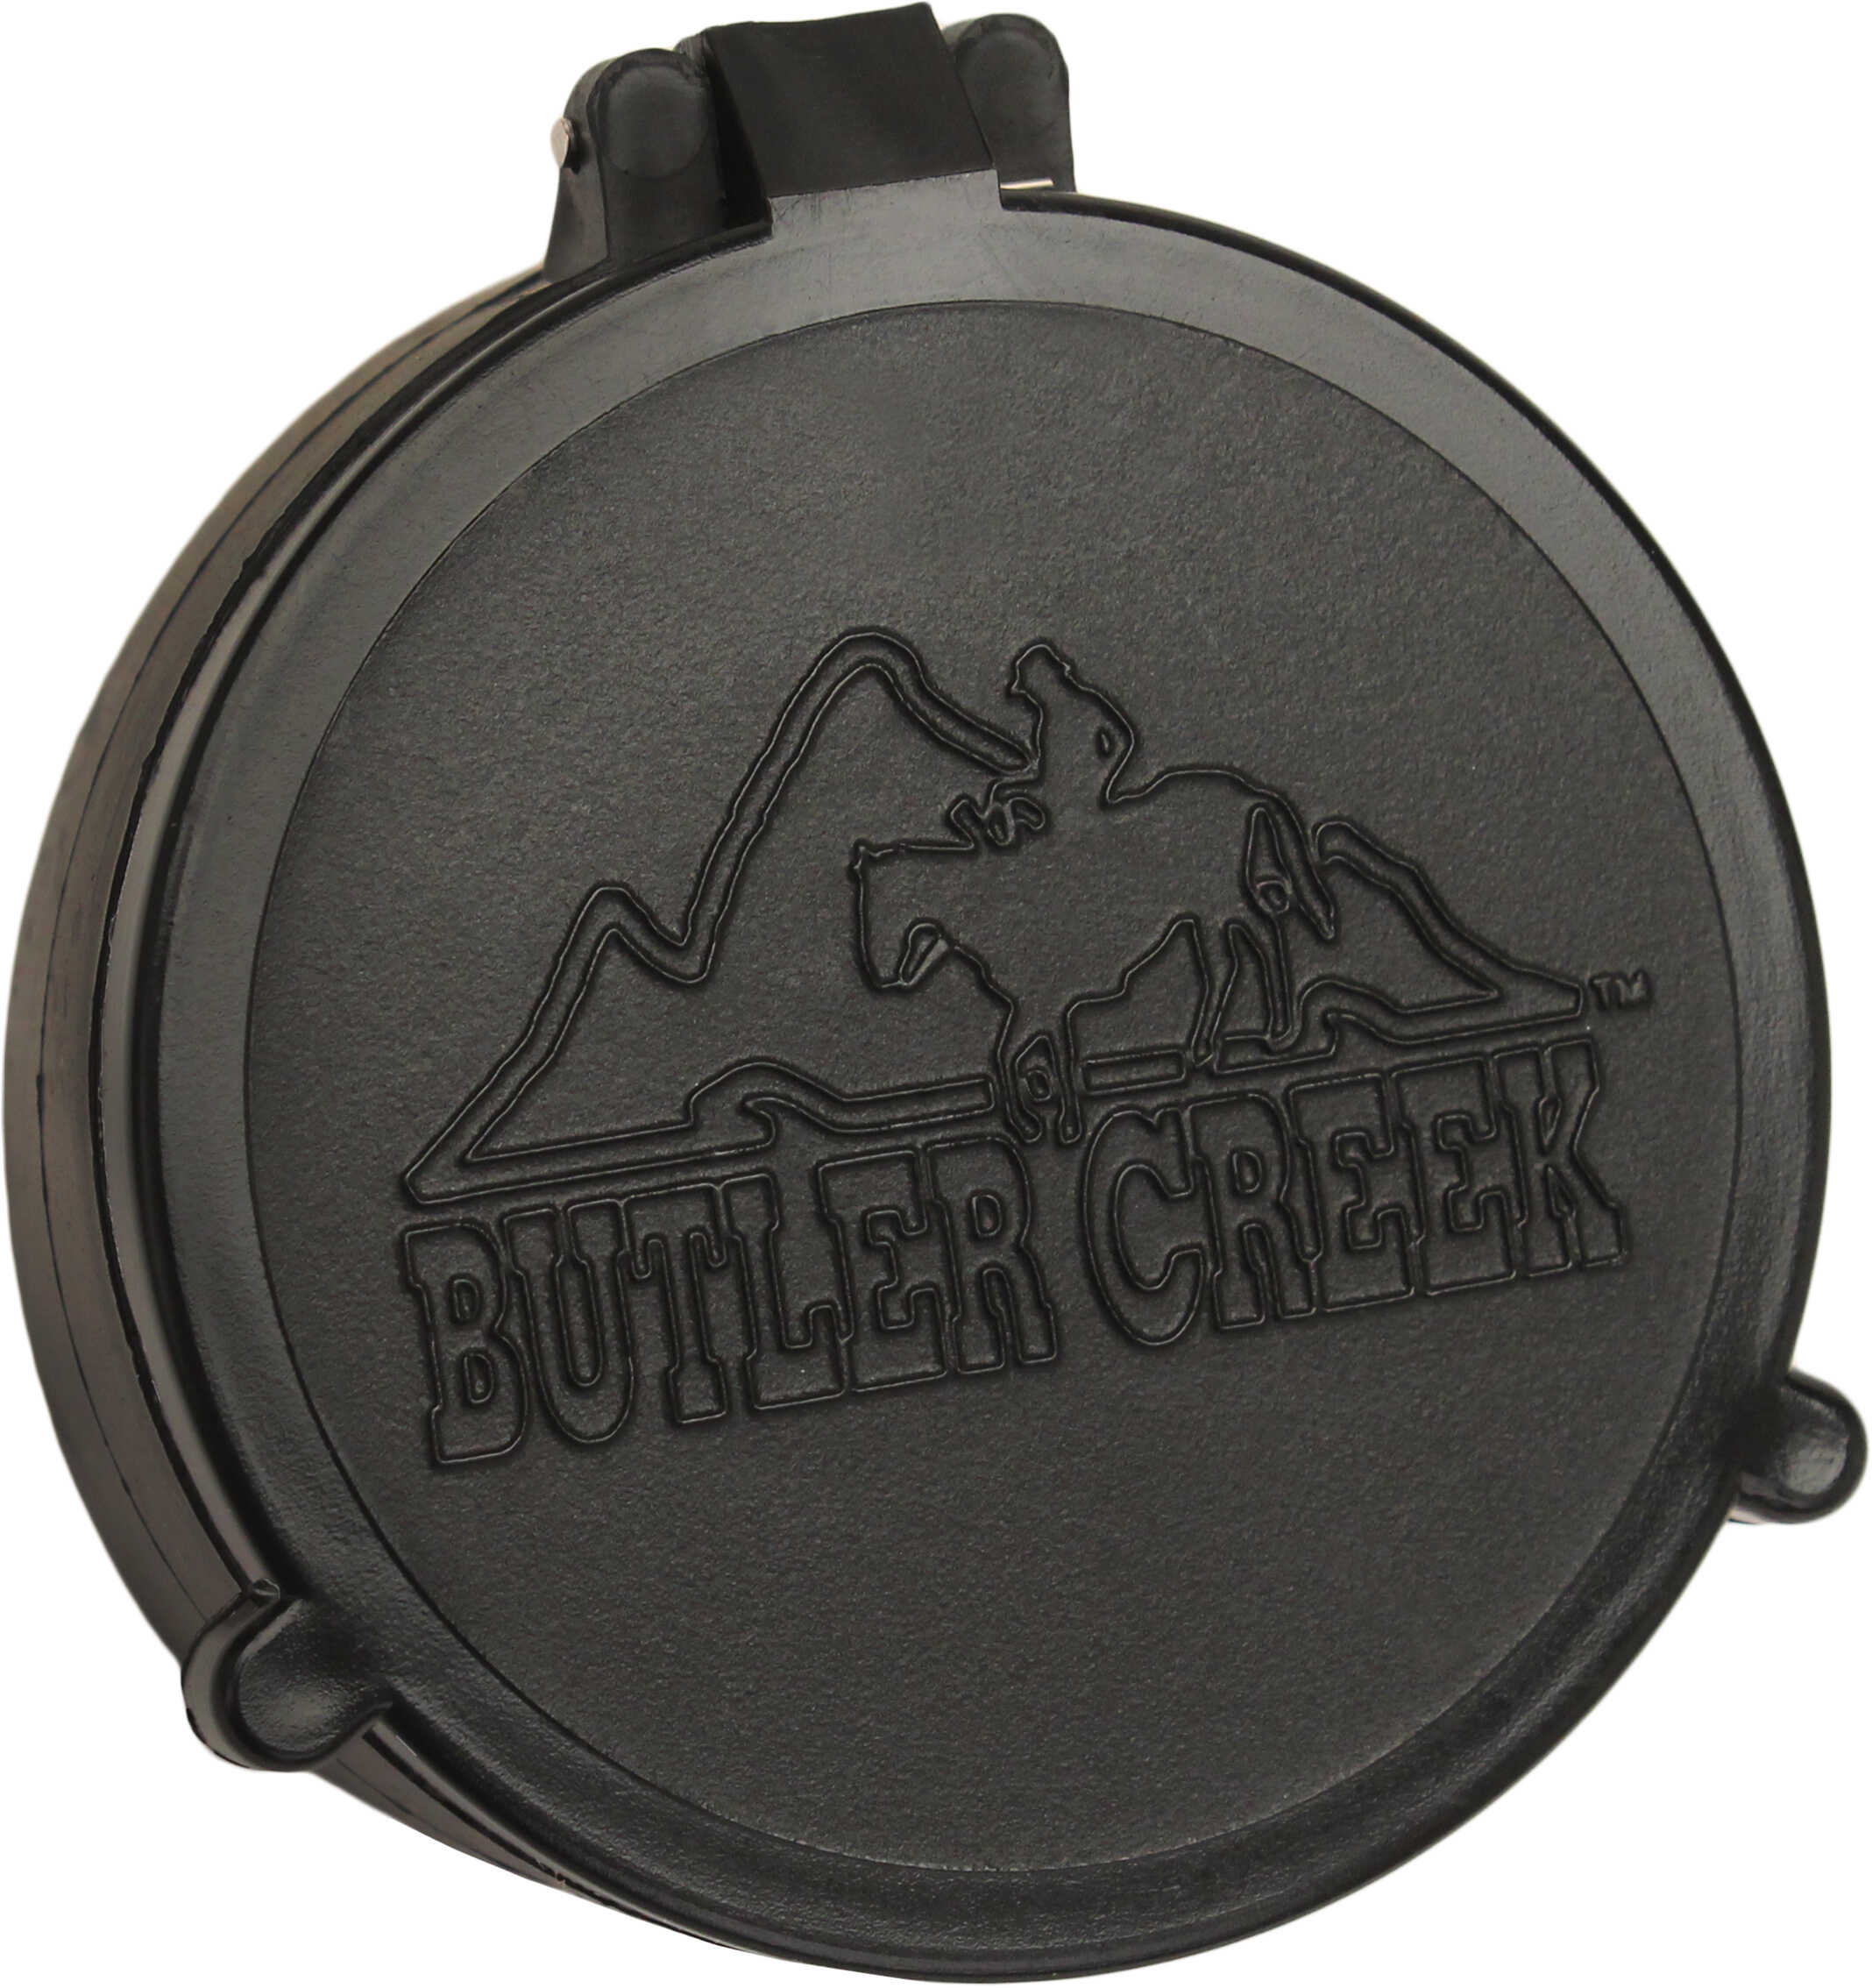 Butler Creek Flip-Open Scope Cover Size 45 Objective Model: 30450